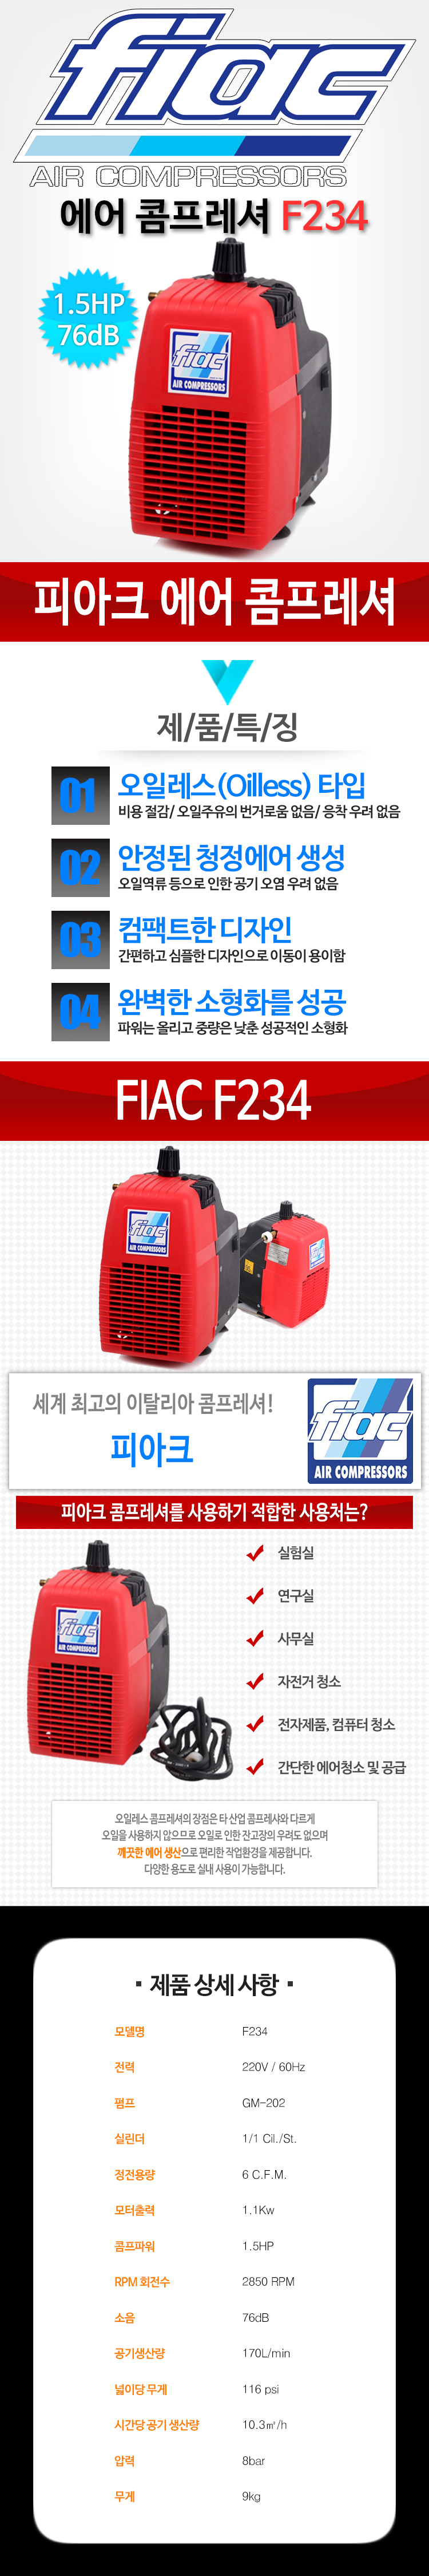 FIAC_F234.jpg